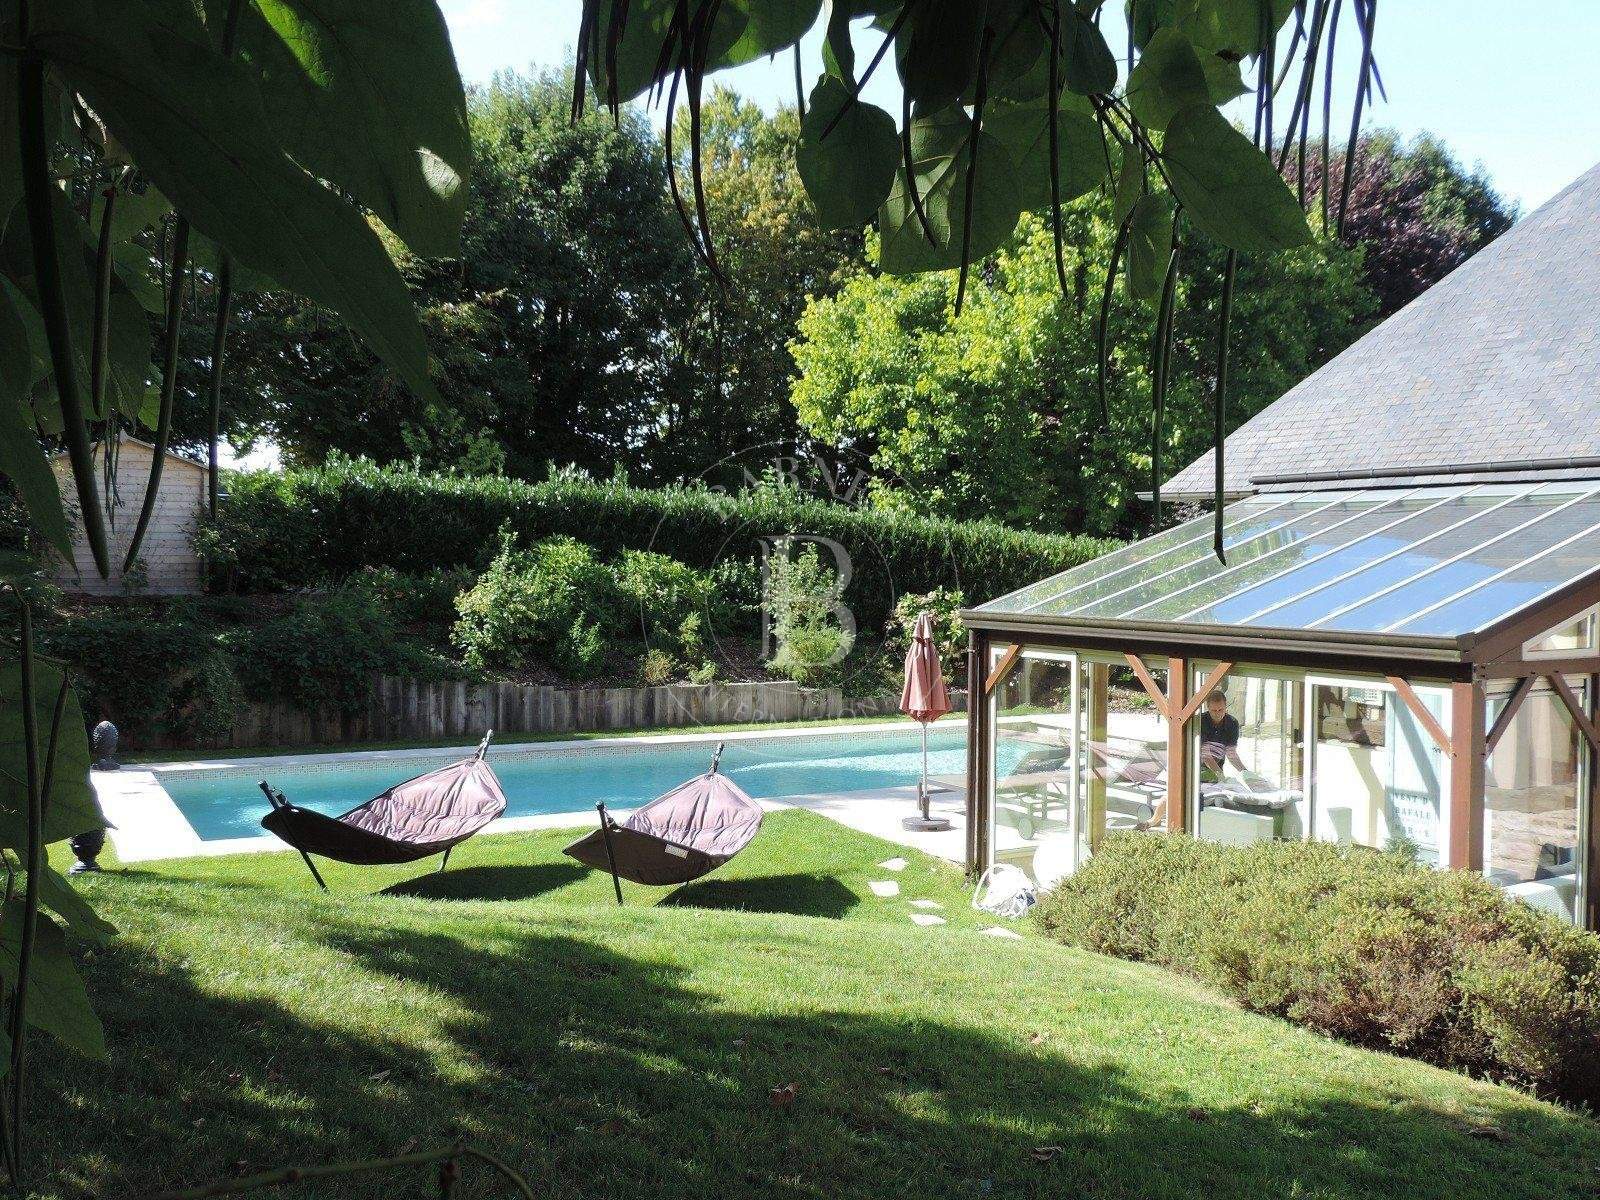 Proche Deauville Propriété de caractère - 6 chambres - piscine chauffée, tennis, parc paysager 1Ha picture 15